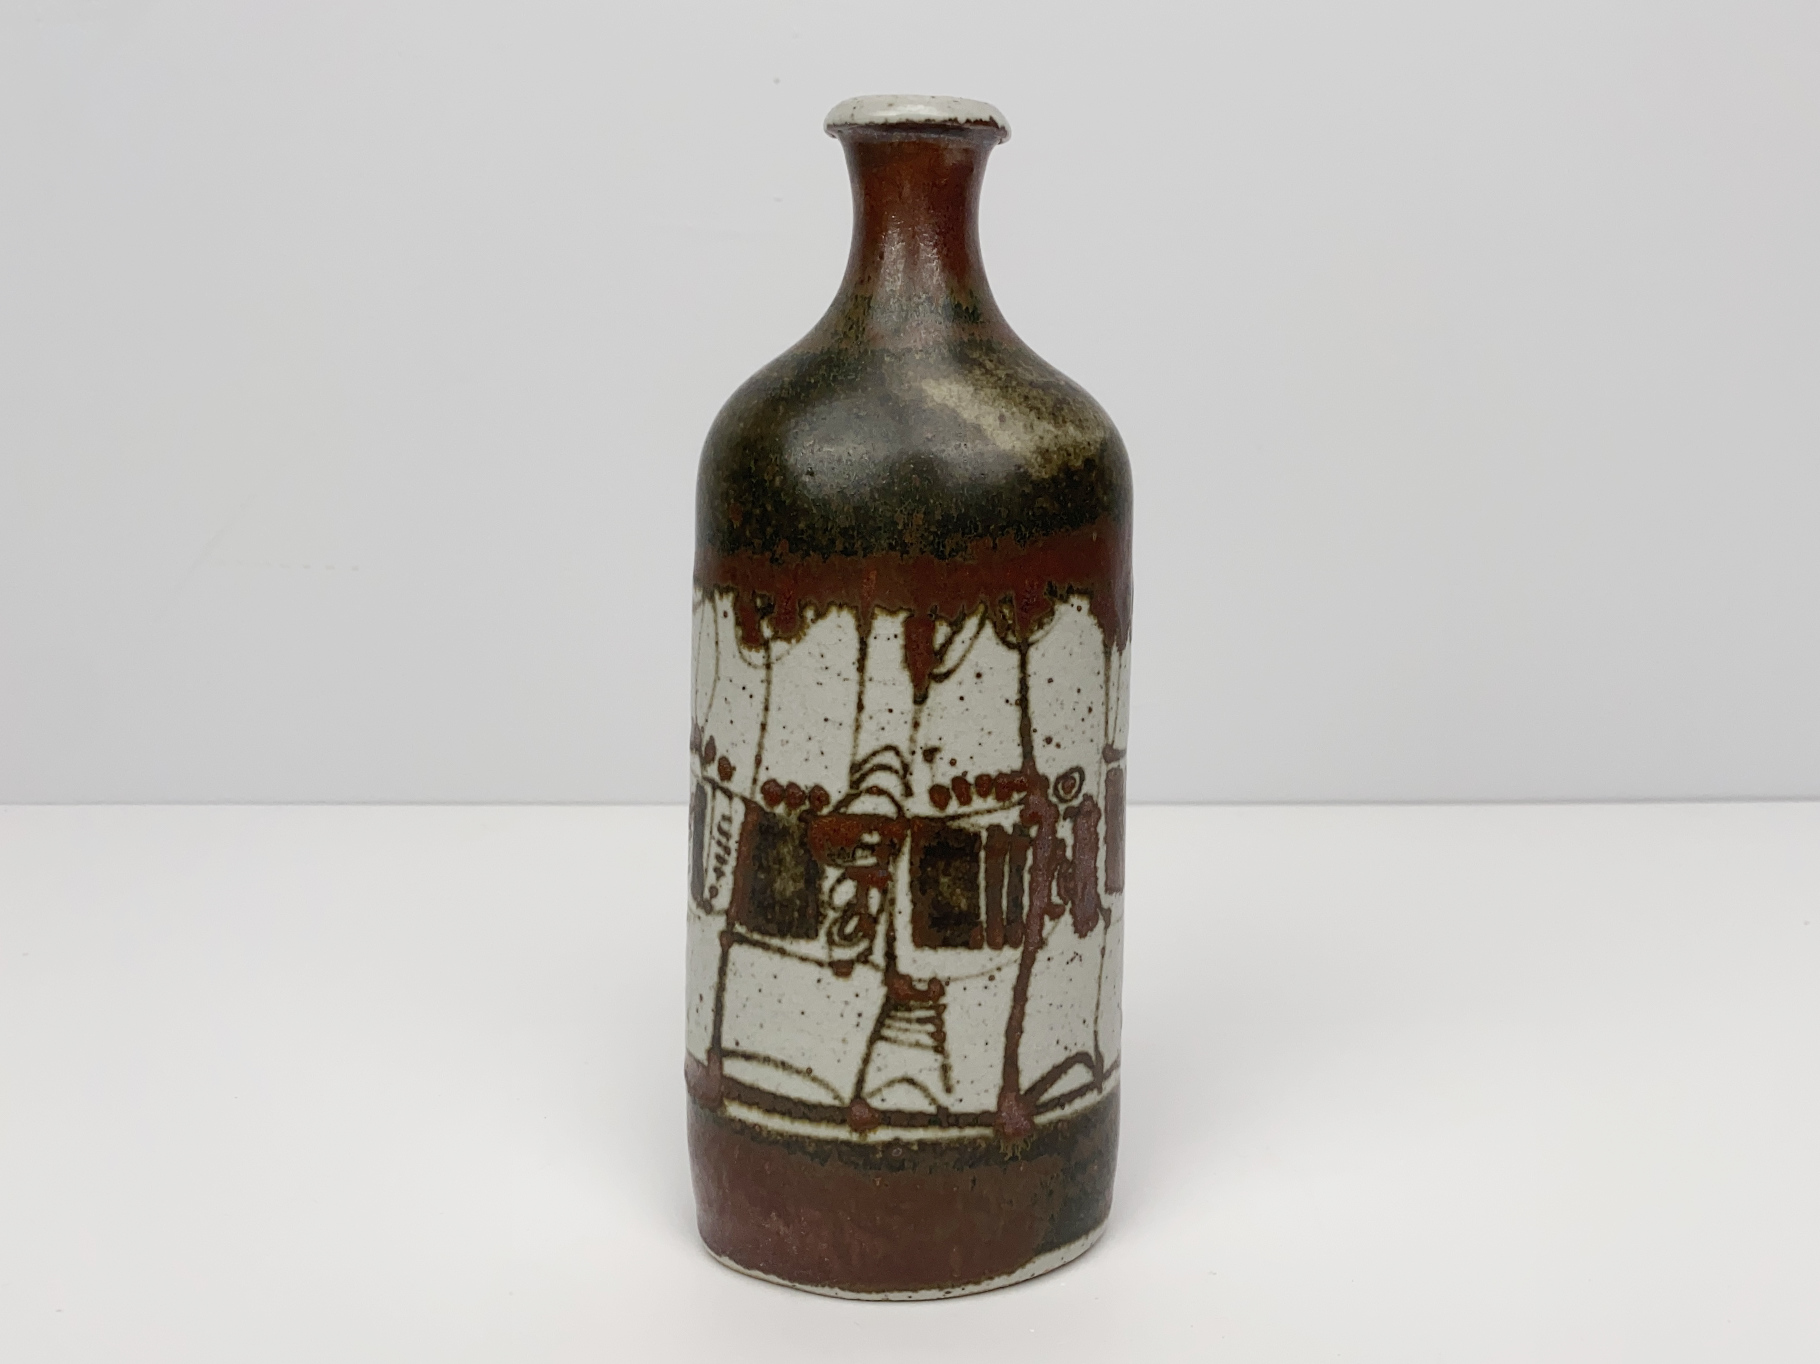 Vase, Keramik, Steinzeug, Unikat, mit Eisenoxid bemalt, von Wilhelm & Elly Kuch, 1970er